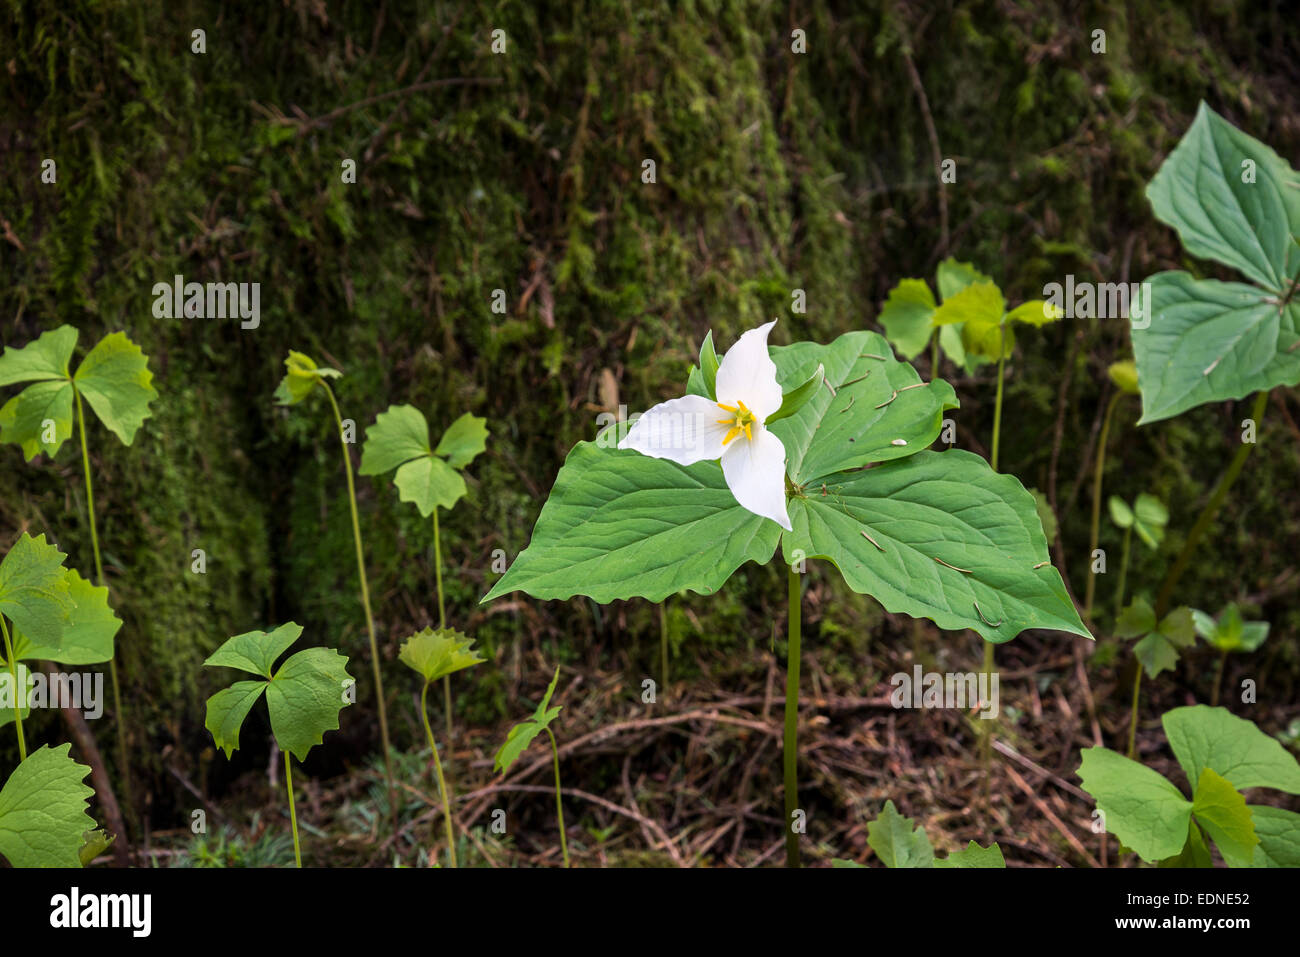 Western Trillium, Trillium ovatum,British Columbia, Canada Stock Photo